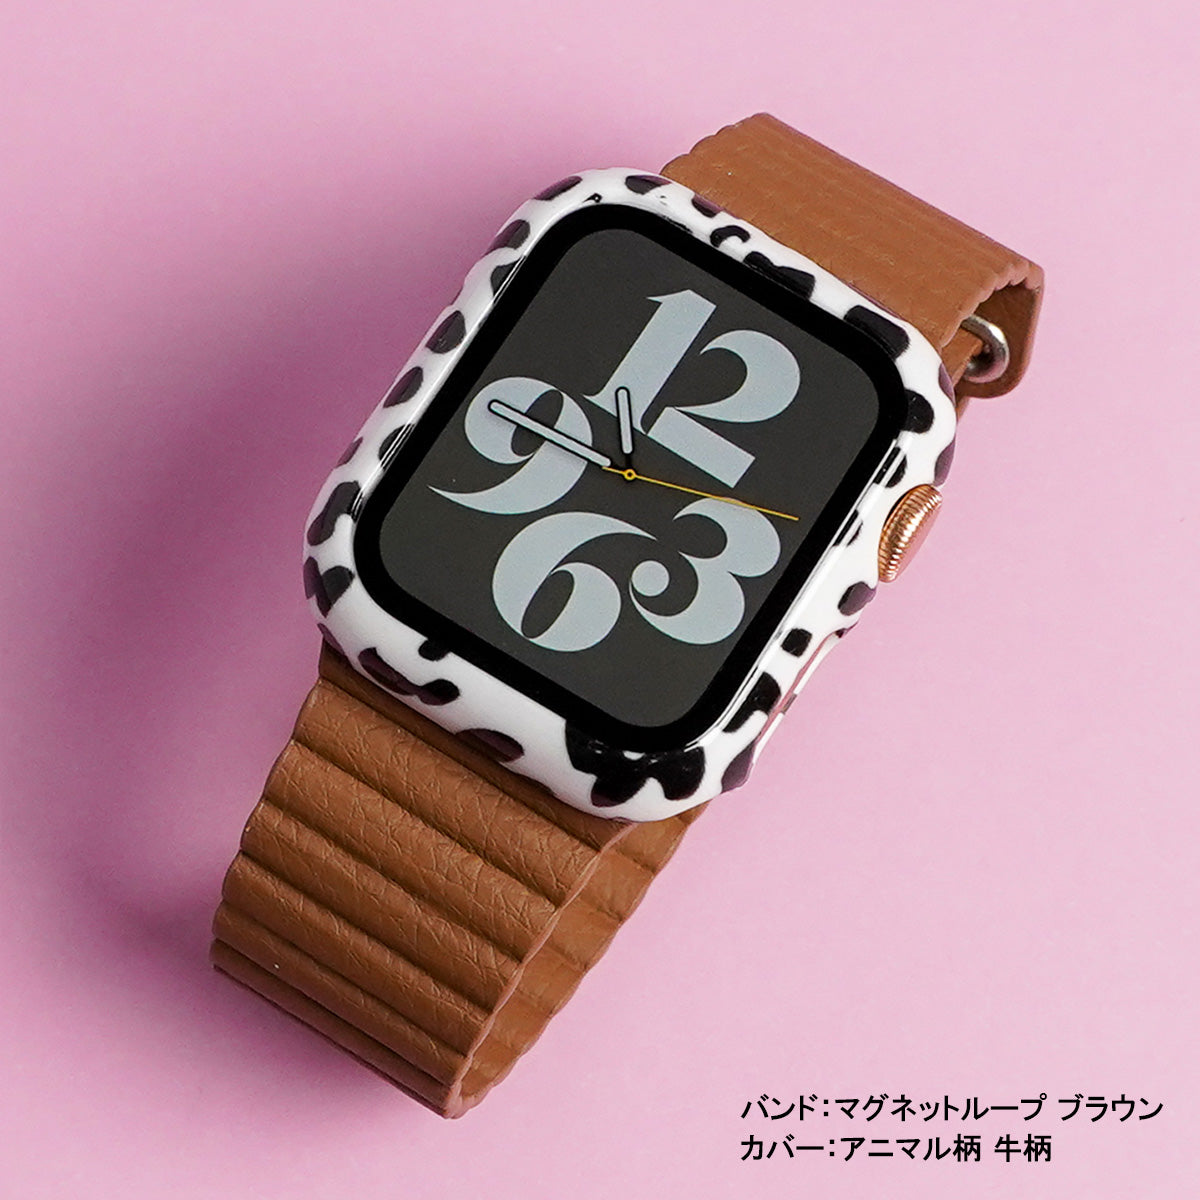 Apple Watch マグネット式 PUレザー バンド パープル - レザーベルト